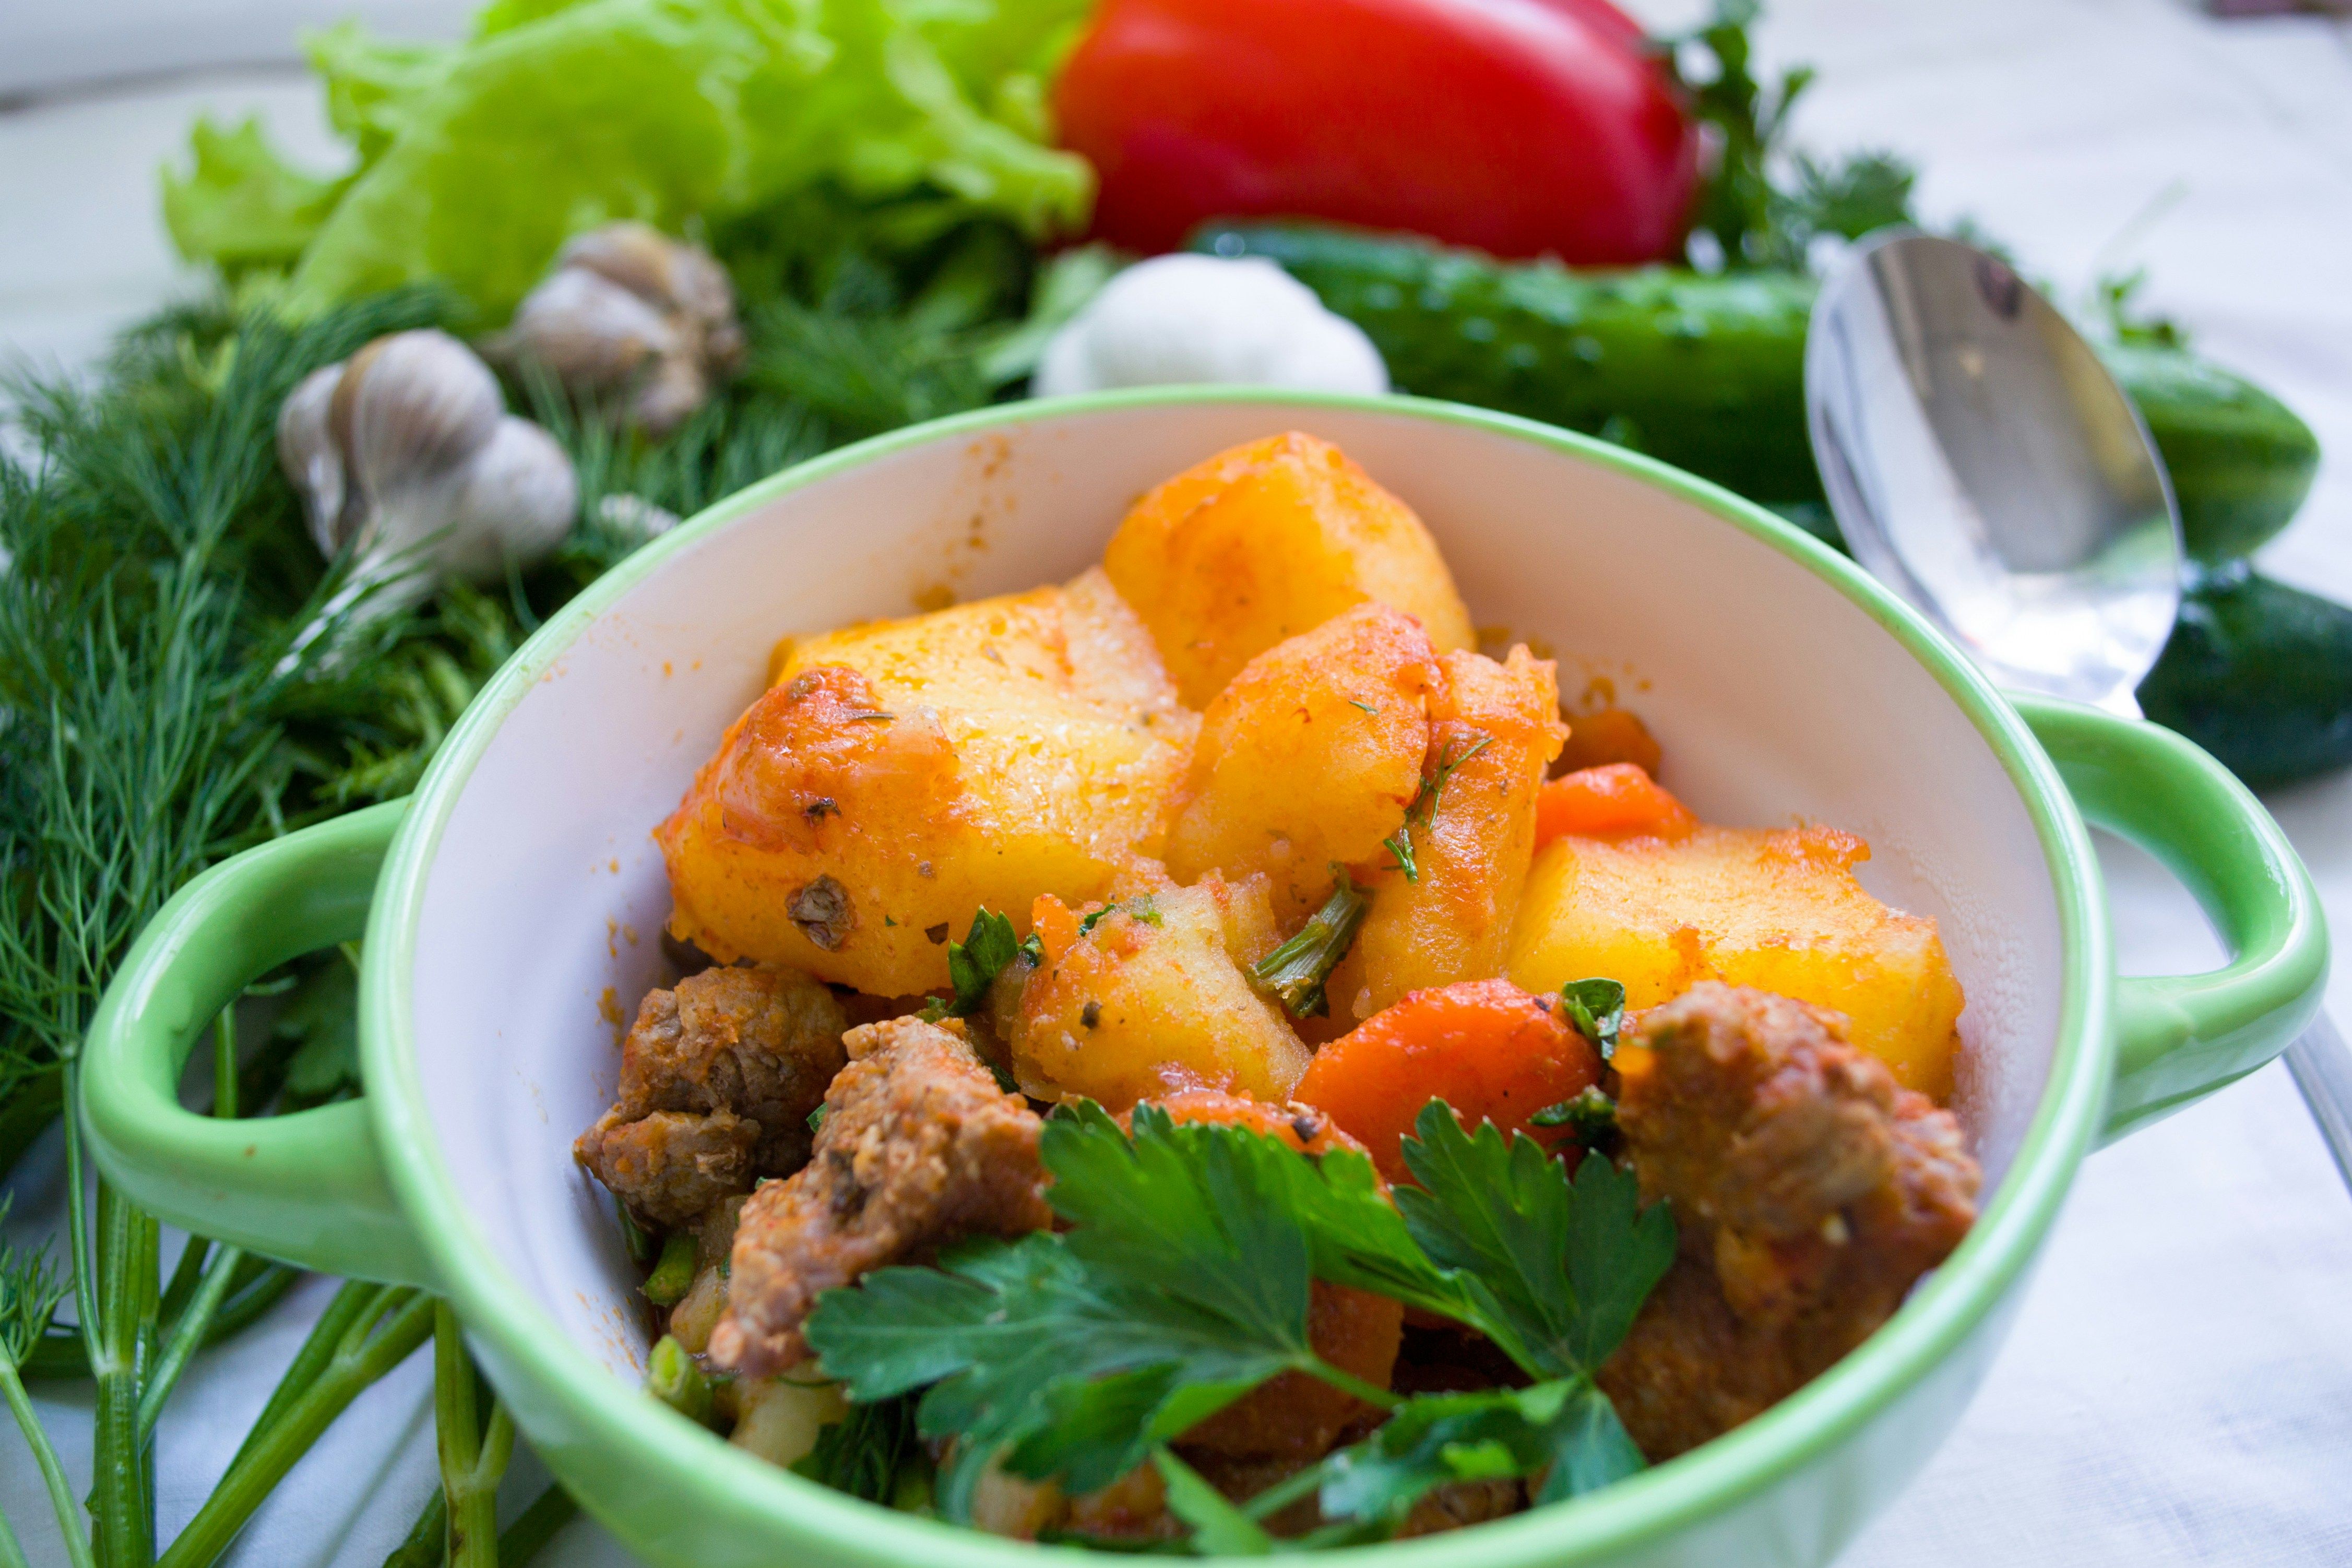 Идея ужина из простых продуктов - готовим картофель с мясом - бюджетный рецепт - Новости Вкусно